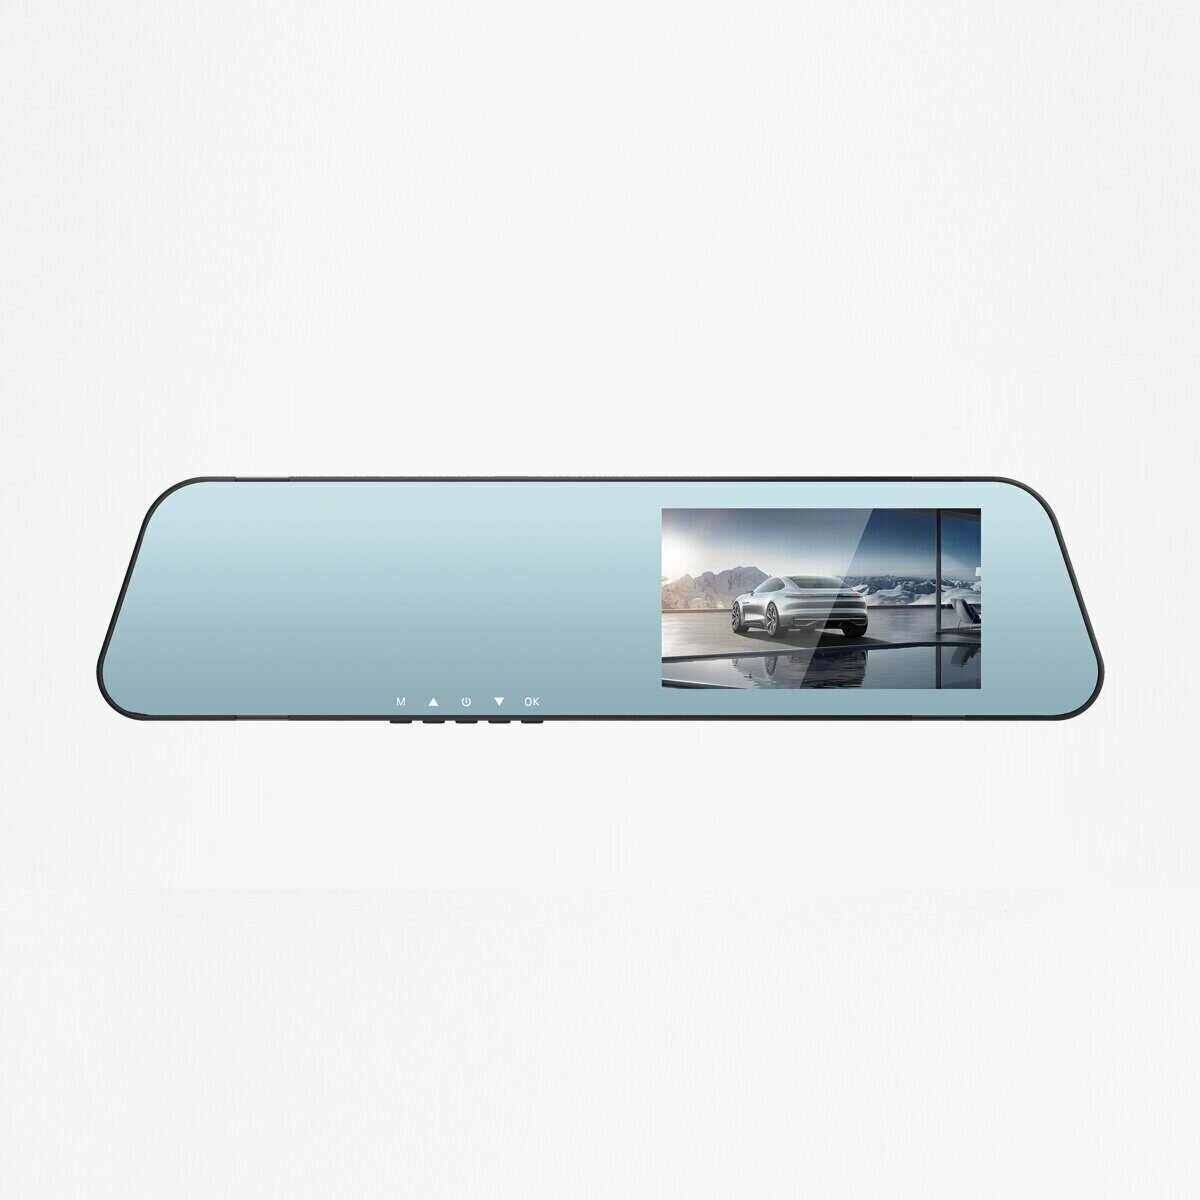 Автомобильный видеорегистратор-зеркало Eplutus D12. Датчик движения, дисплей 3,5", две камеры